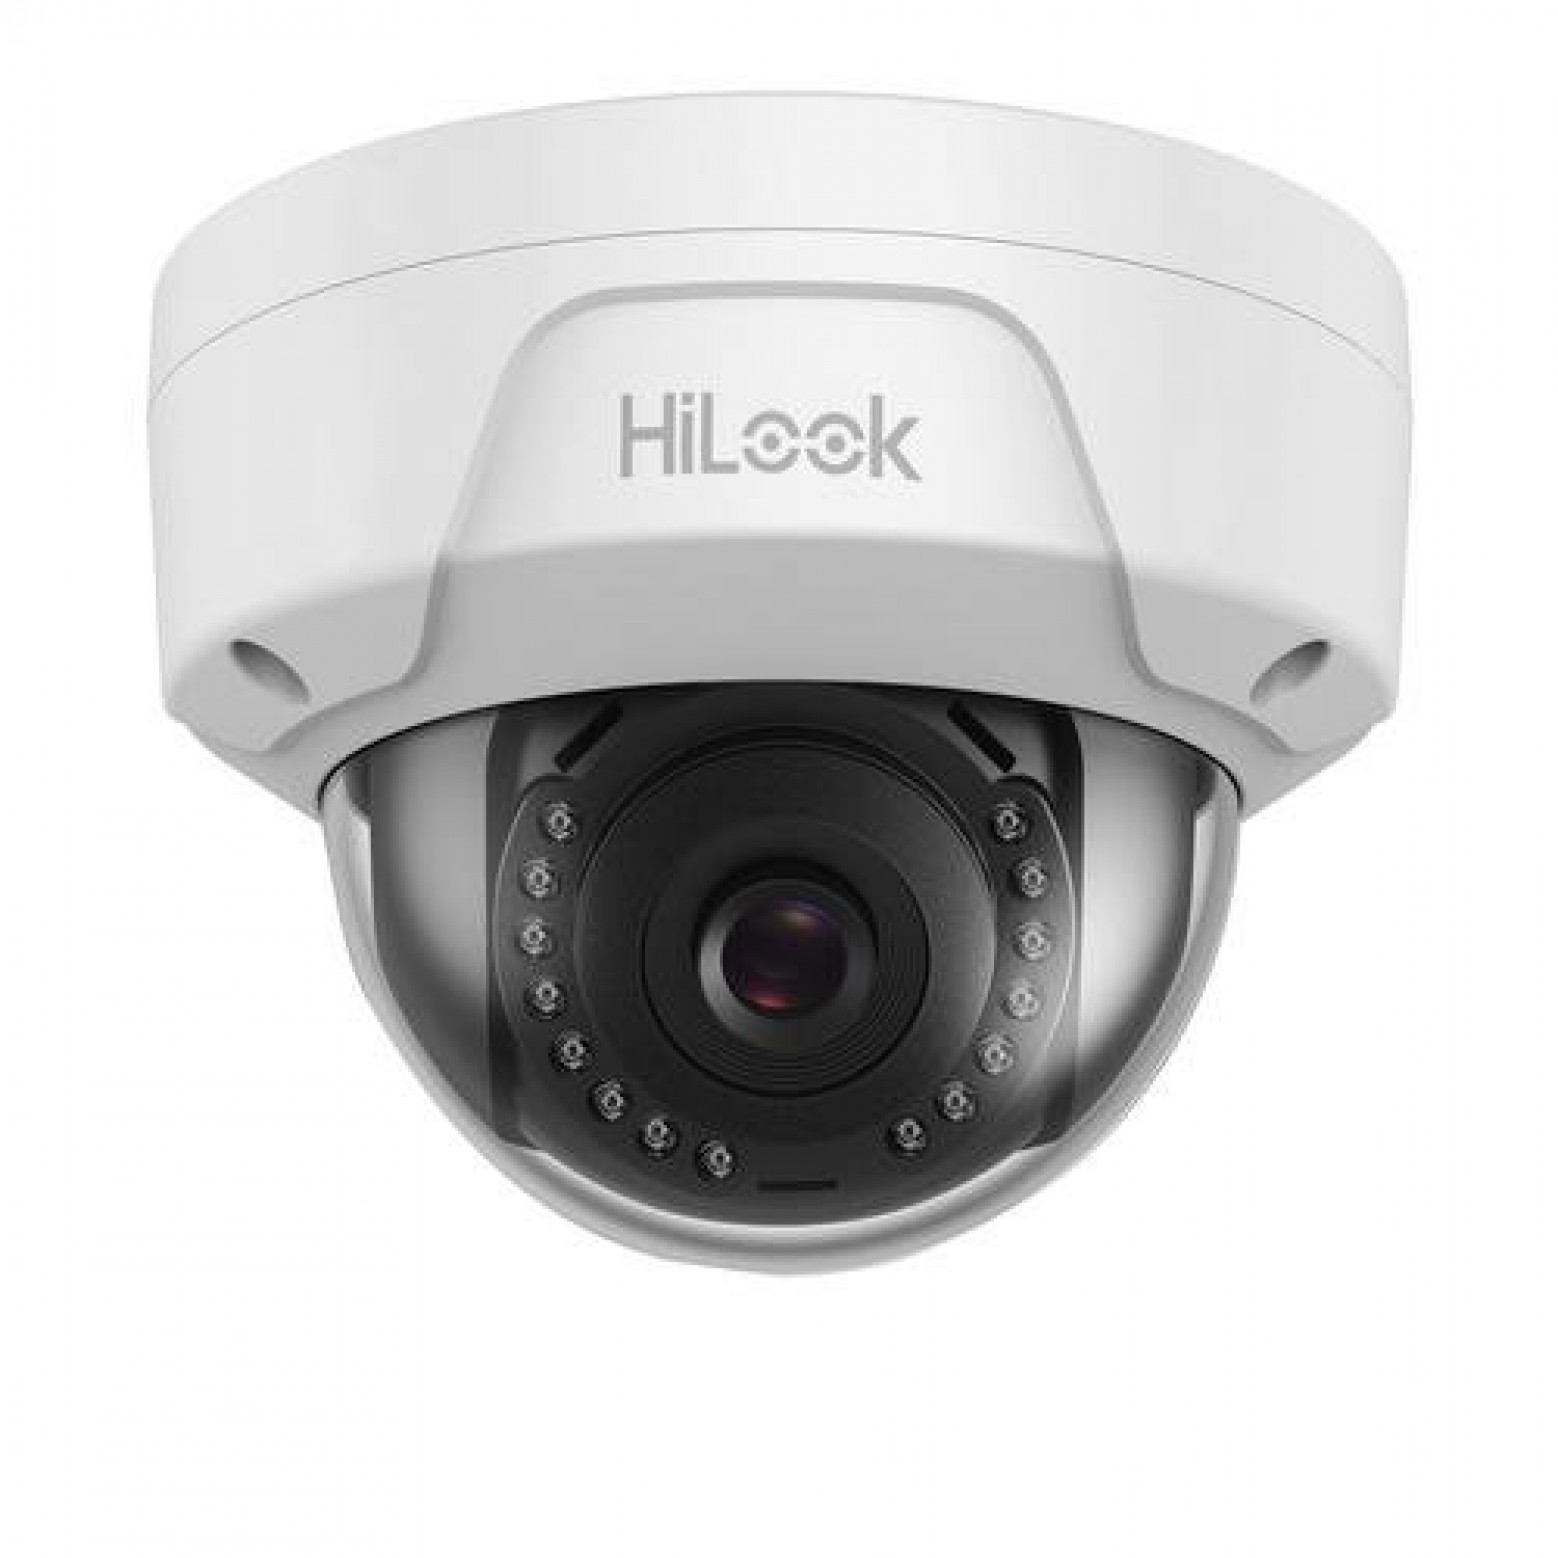 HiLook IPC-D120H  2 megapixel dome camera